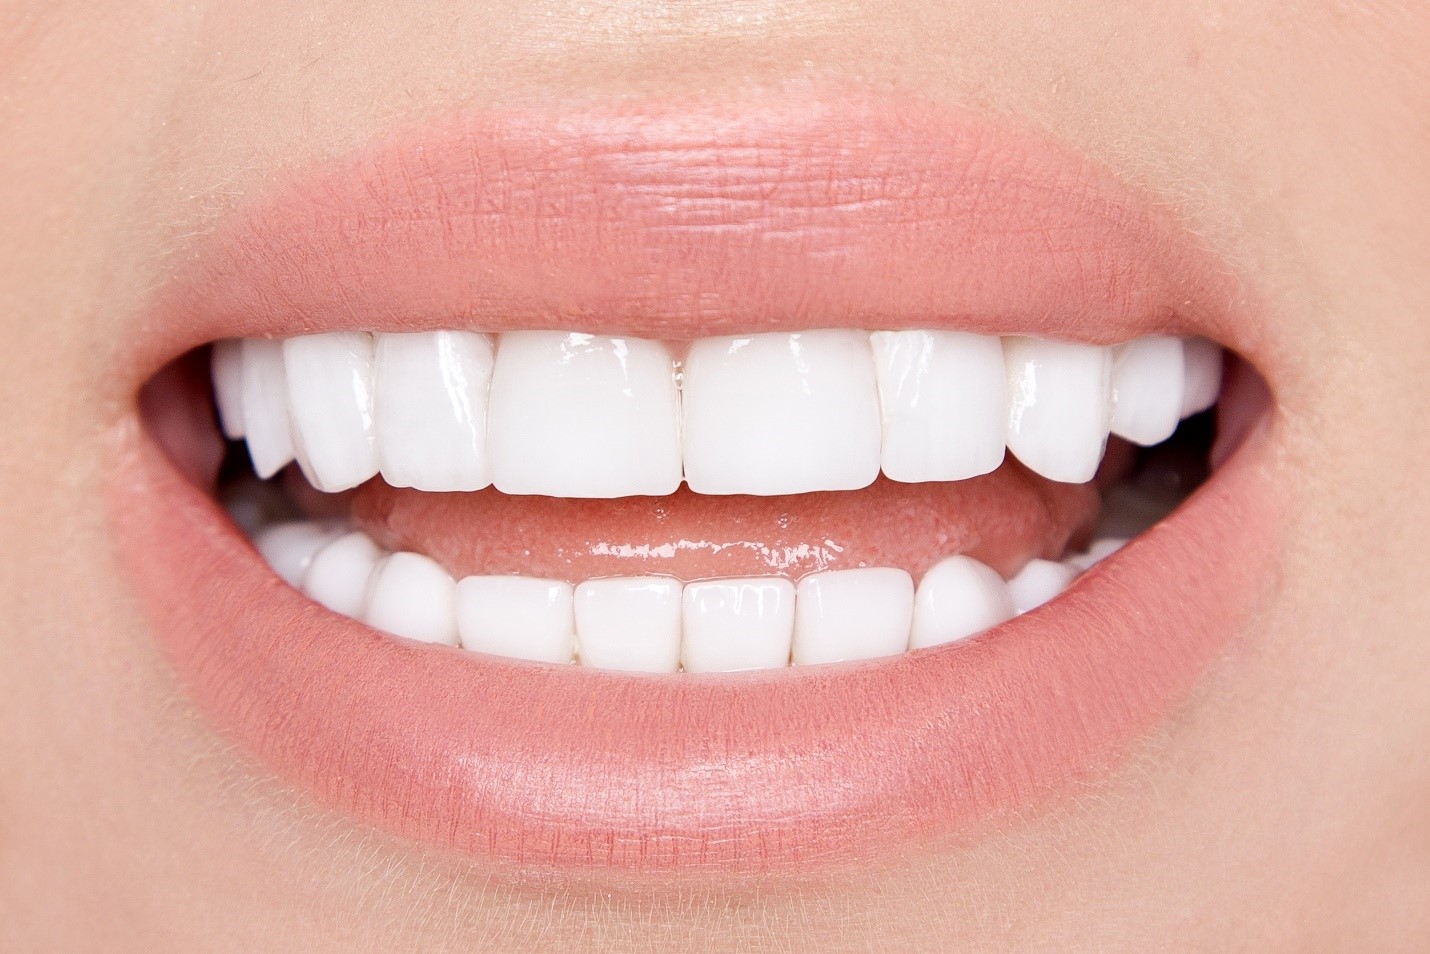 top teeth whitening strip brands
